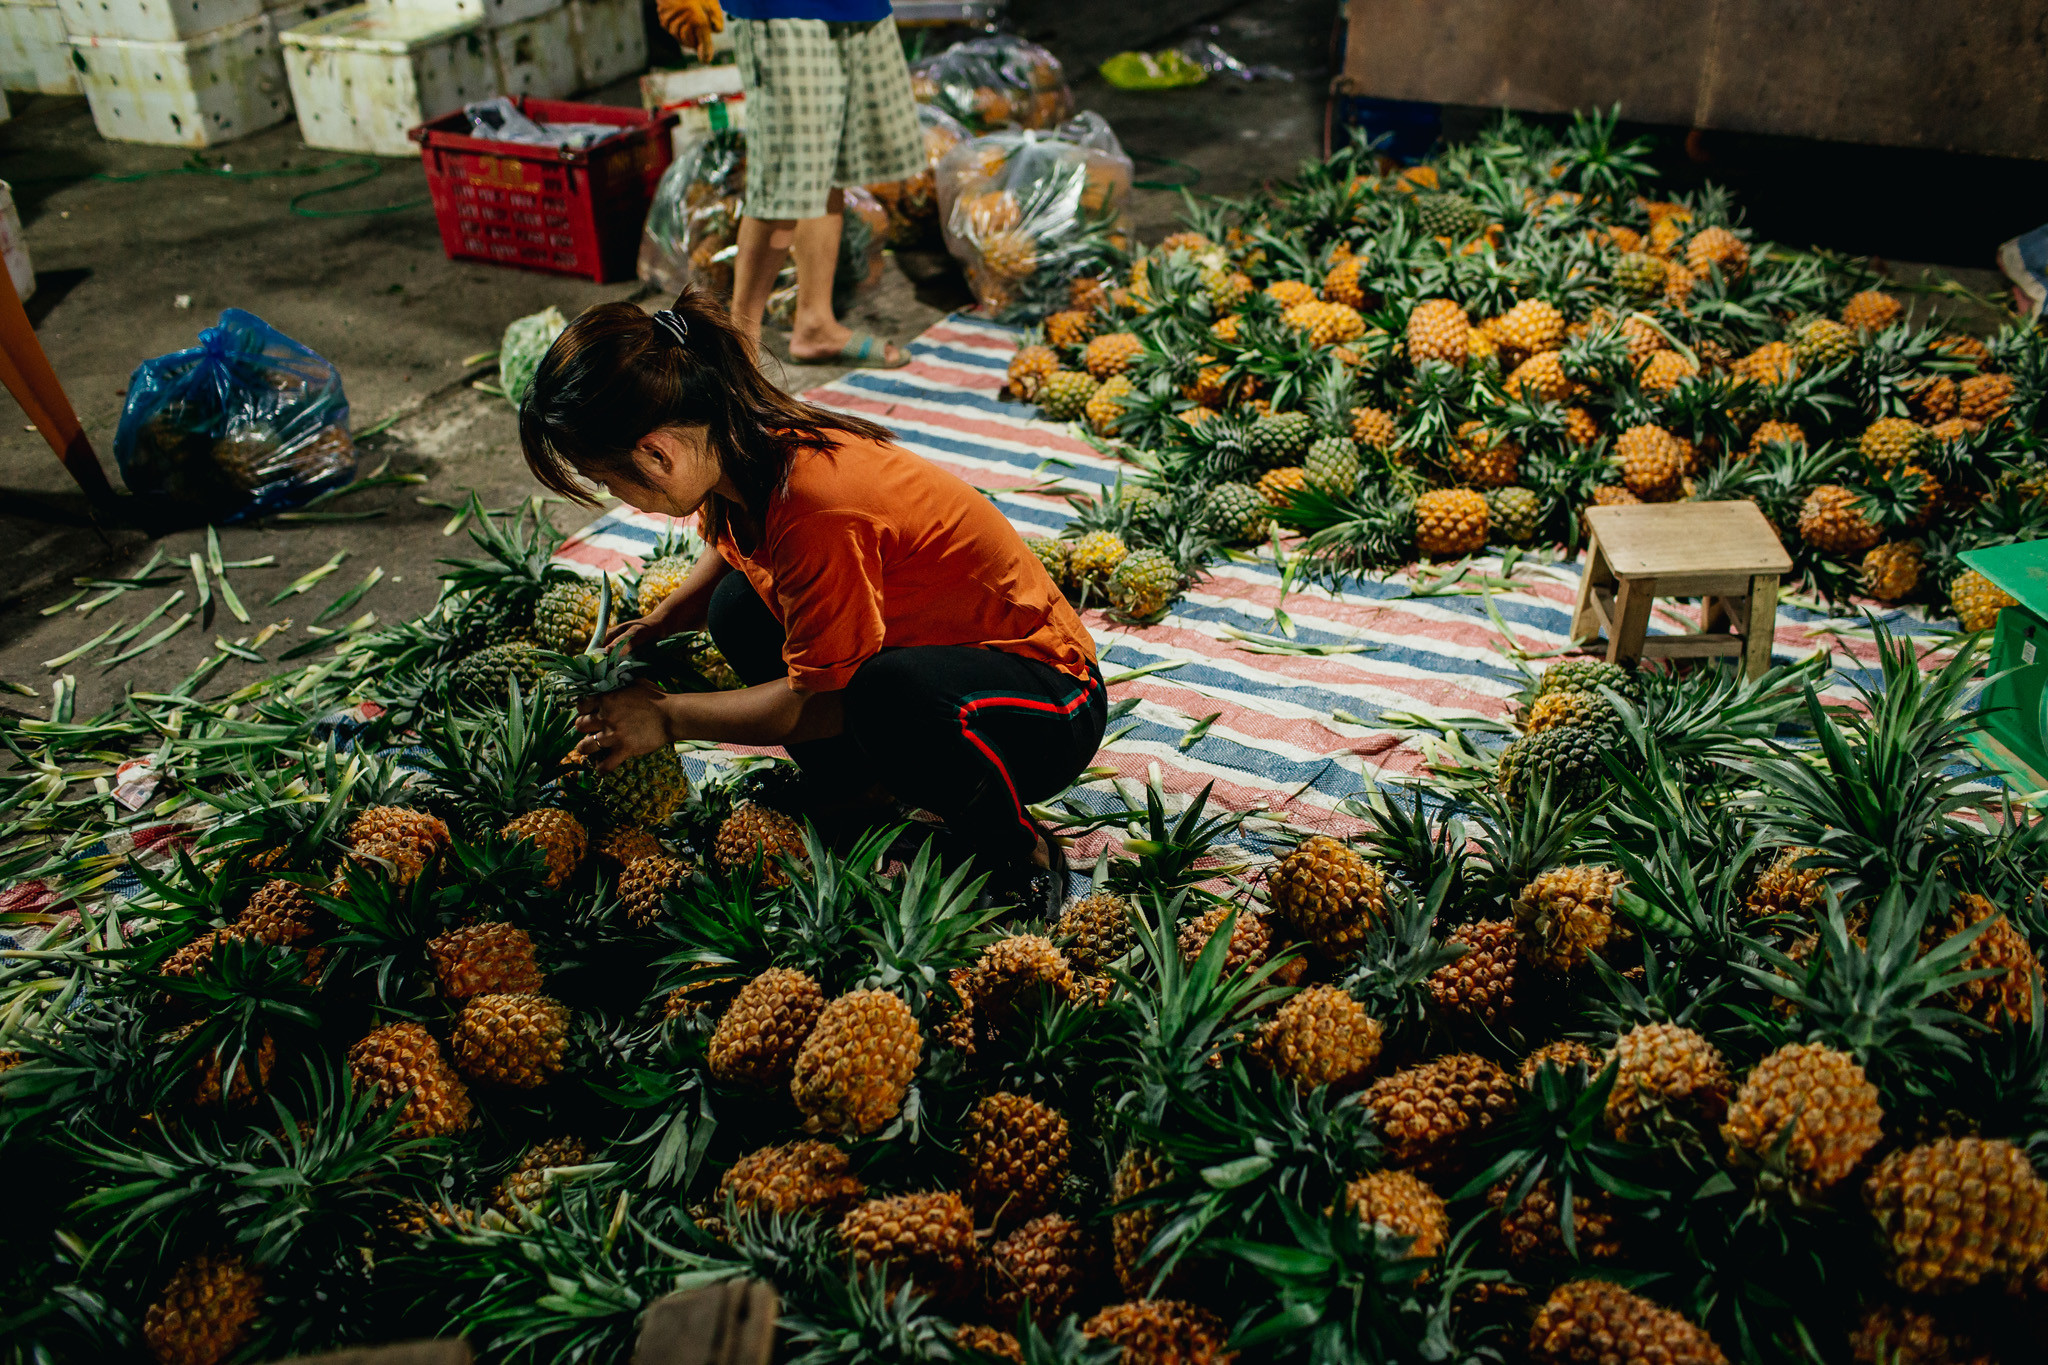 Các mặt hàng chủ yếu ở chợ là hoa quả, rau xanh có nguồn gốc từ những vùng chuyên canh như Nam Đàn, Quỳnh Lưu, và cả từ Đà Lạt, Hà Tây. Ảnh: Kiên Rose